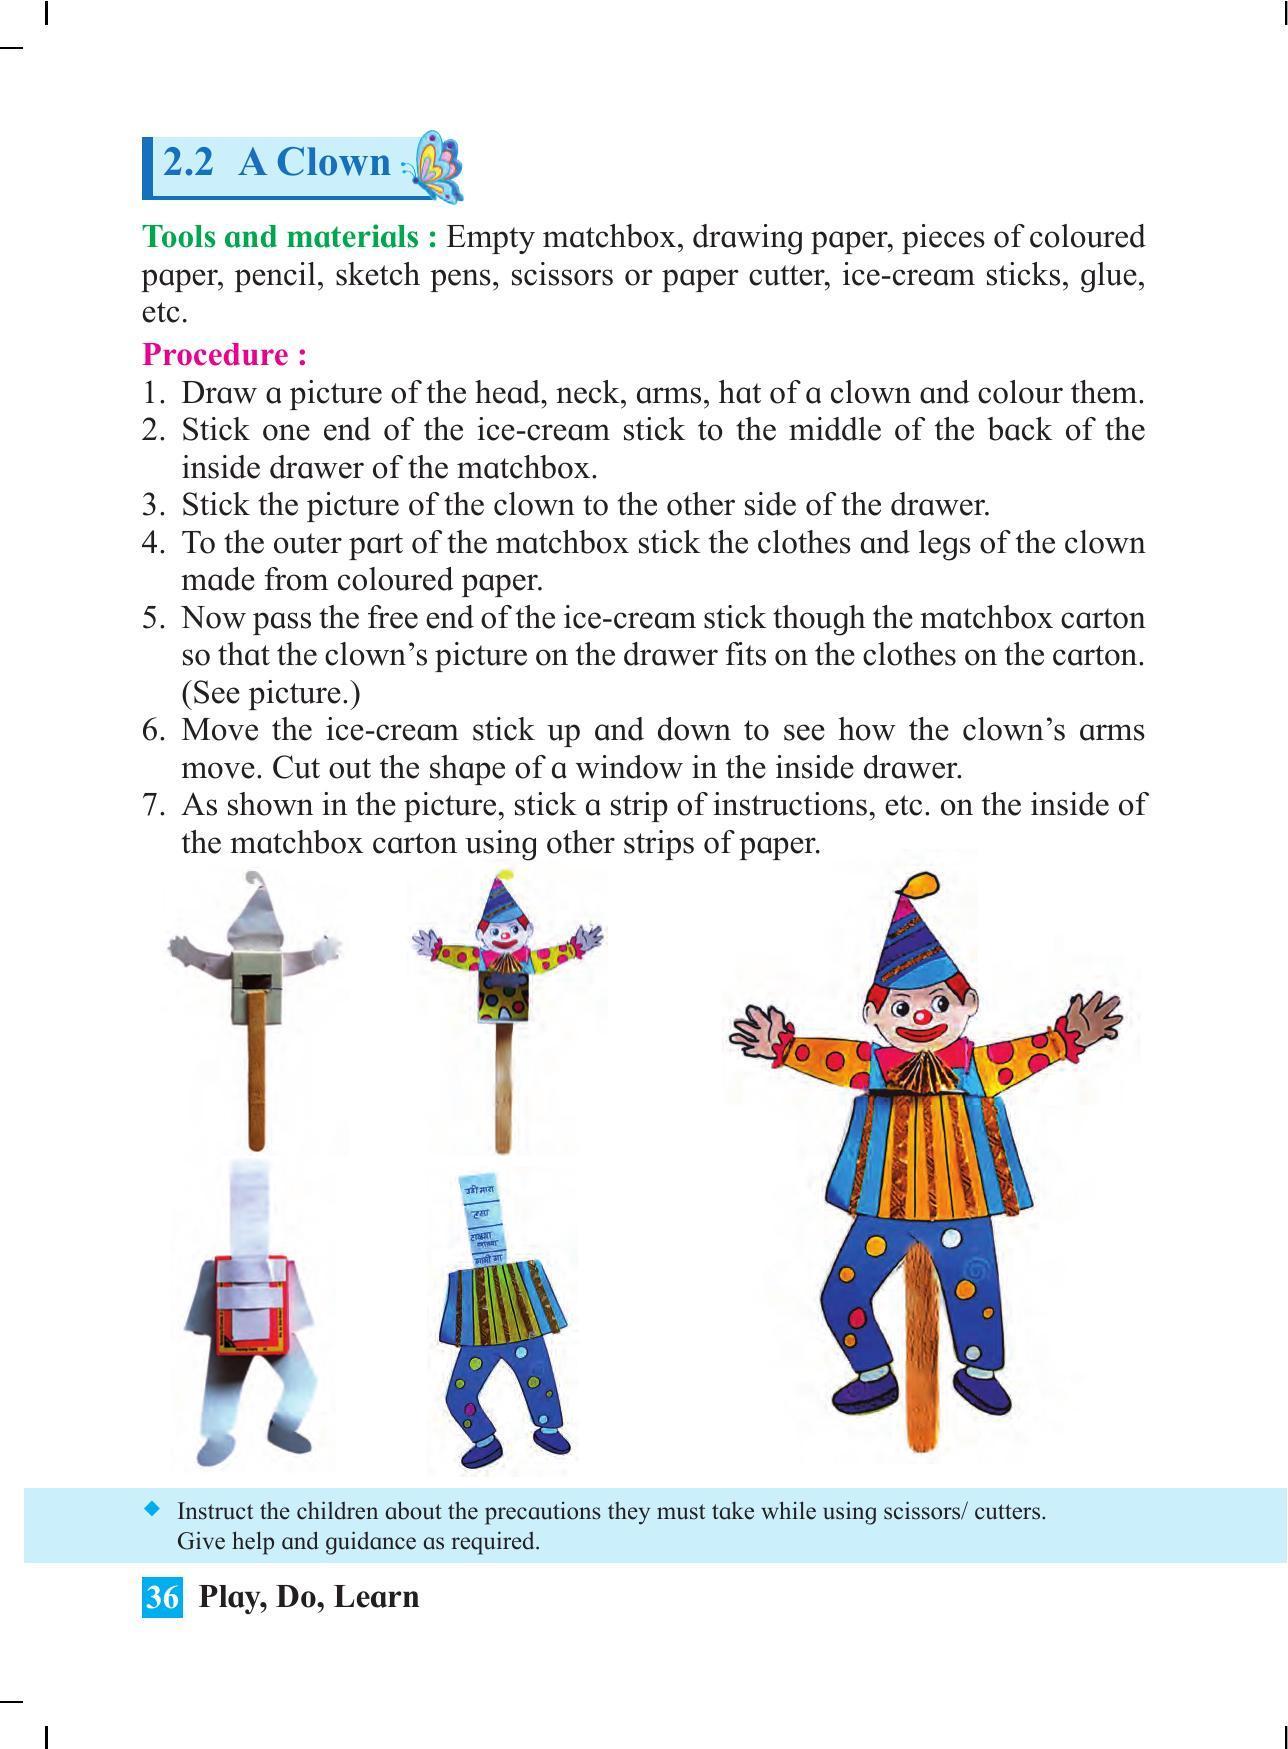 Maharashtra Board Class 4 Play Do Learn (English Medium) Textbook - Page 45